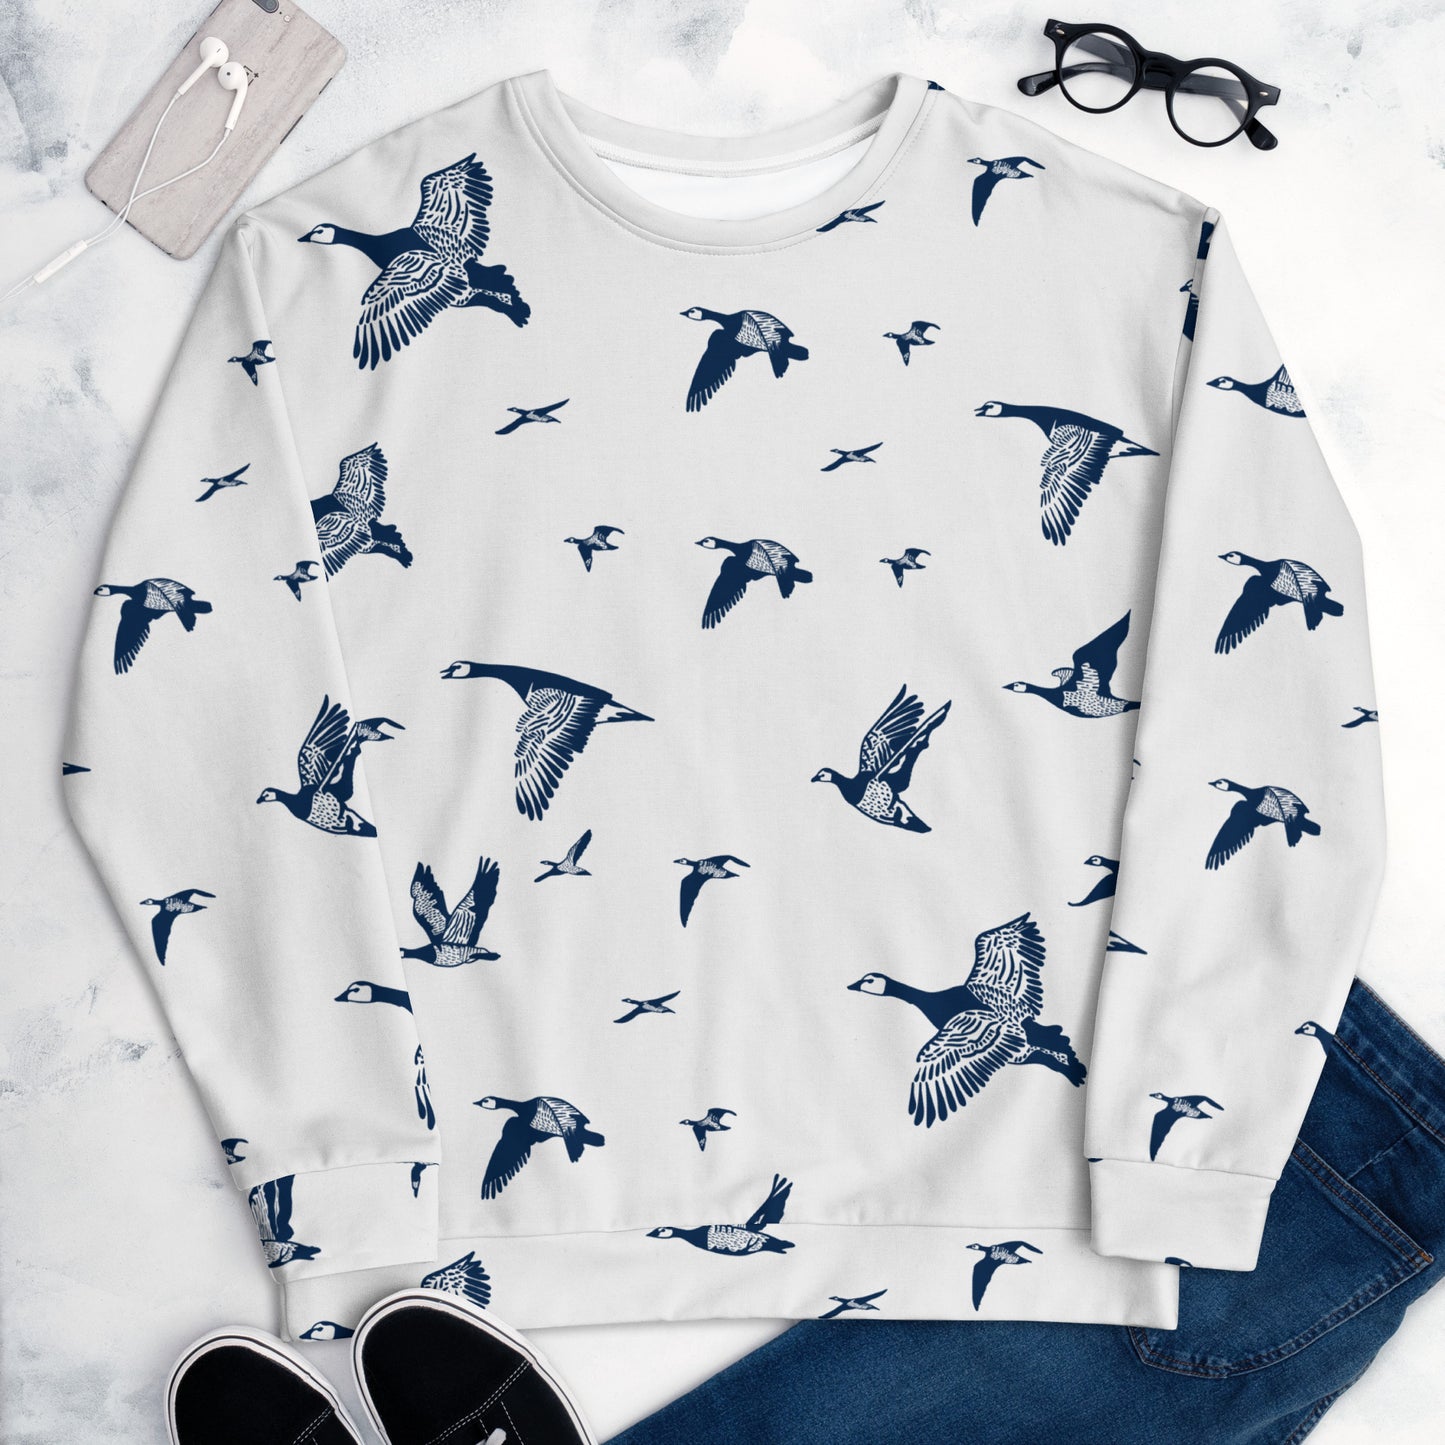 Oh my geese - Unisex Sweatshirt - Long Sleeve- Print N Stuff - [designed in Turku FInland]